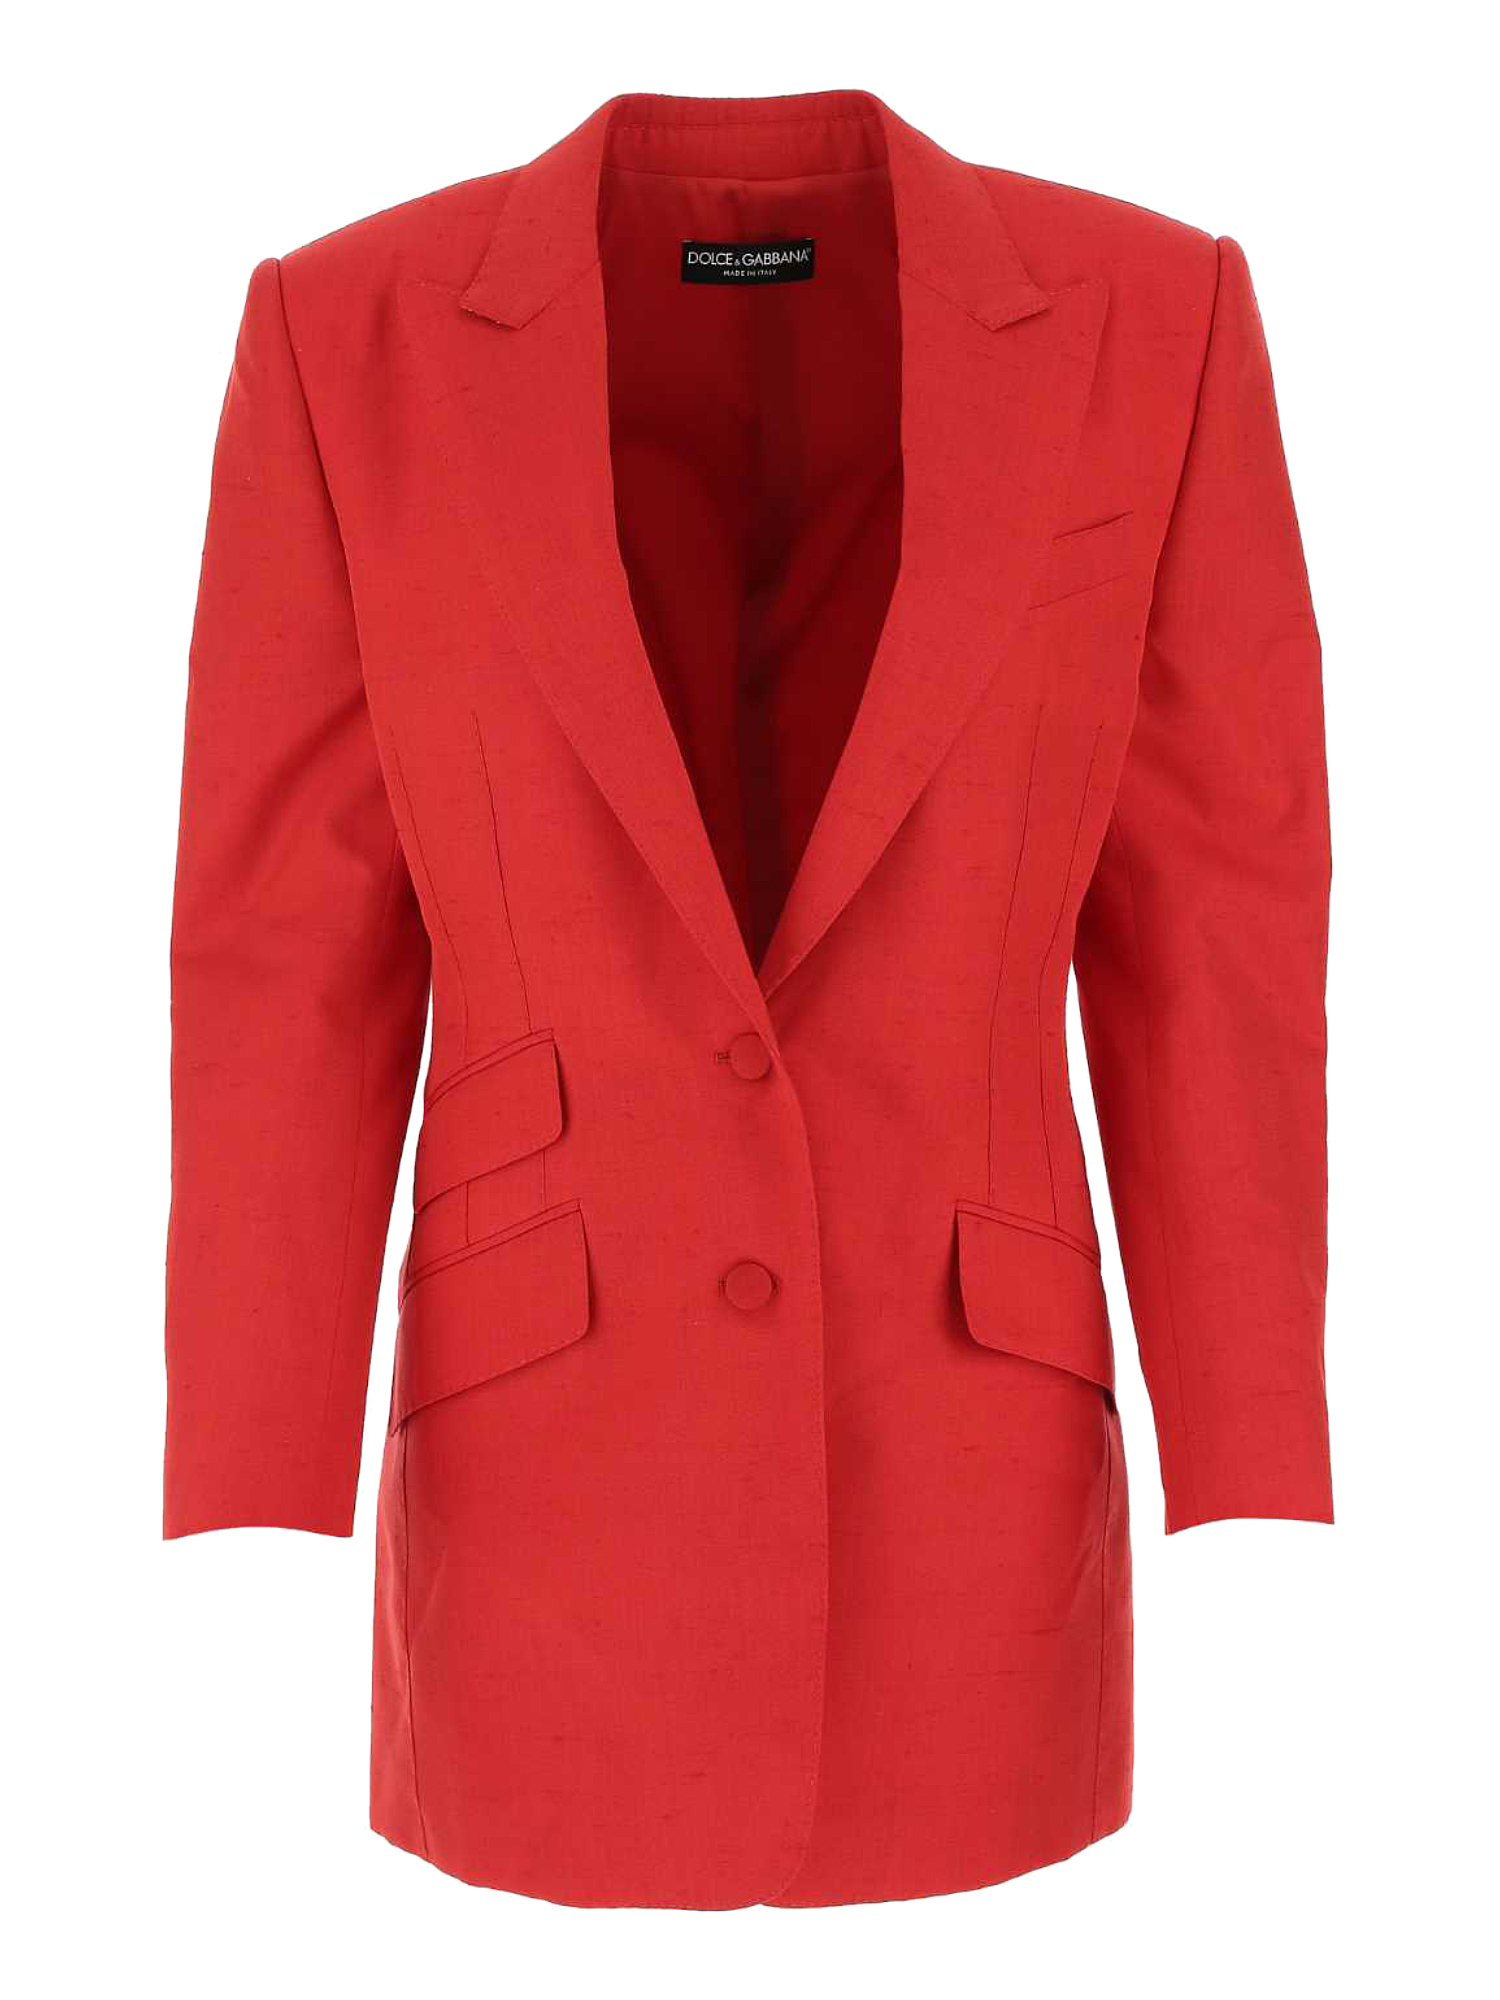 Vestes Pour Femme - Dolce & Gabbana - En Silk Red - Taille:  -